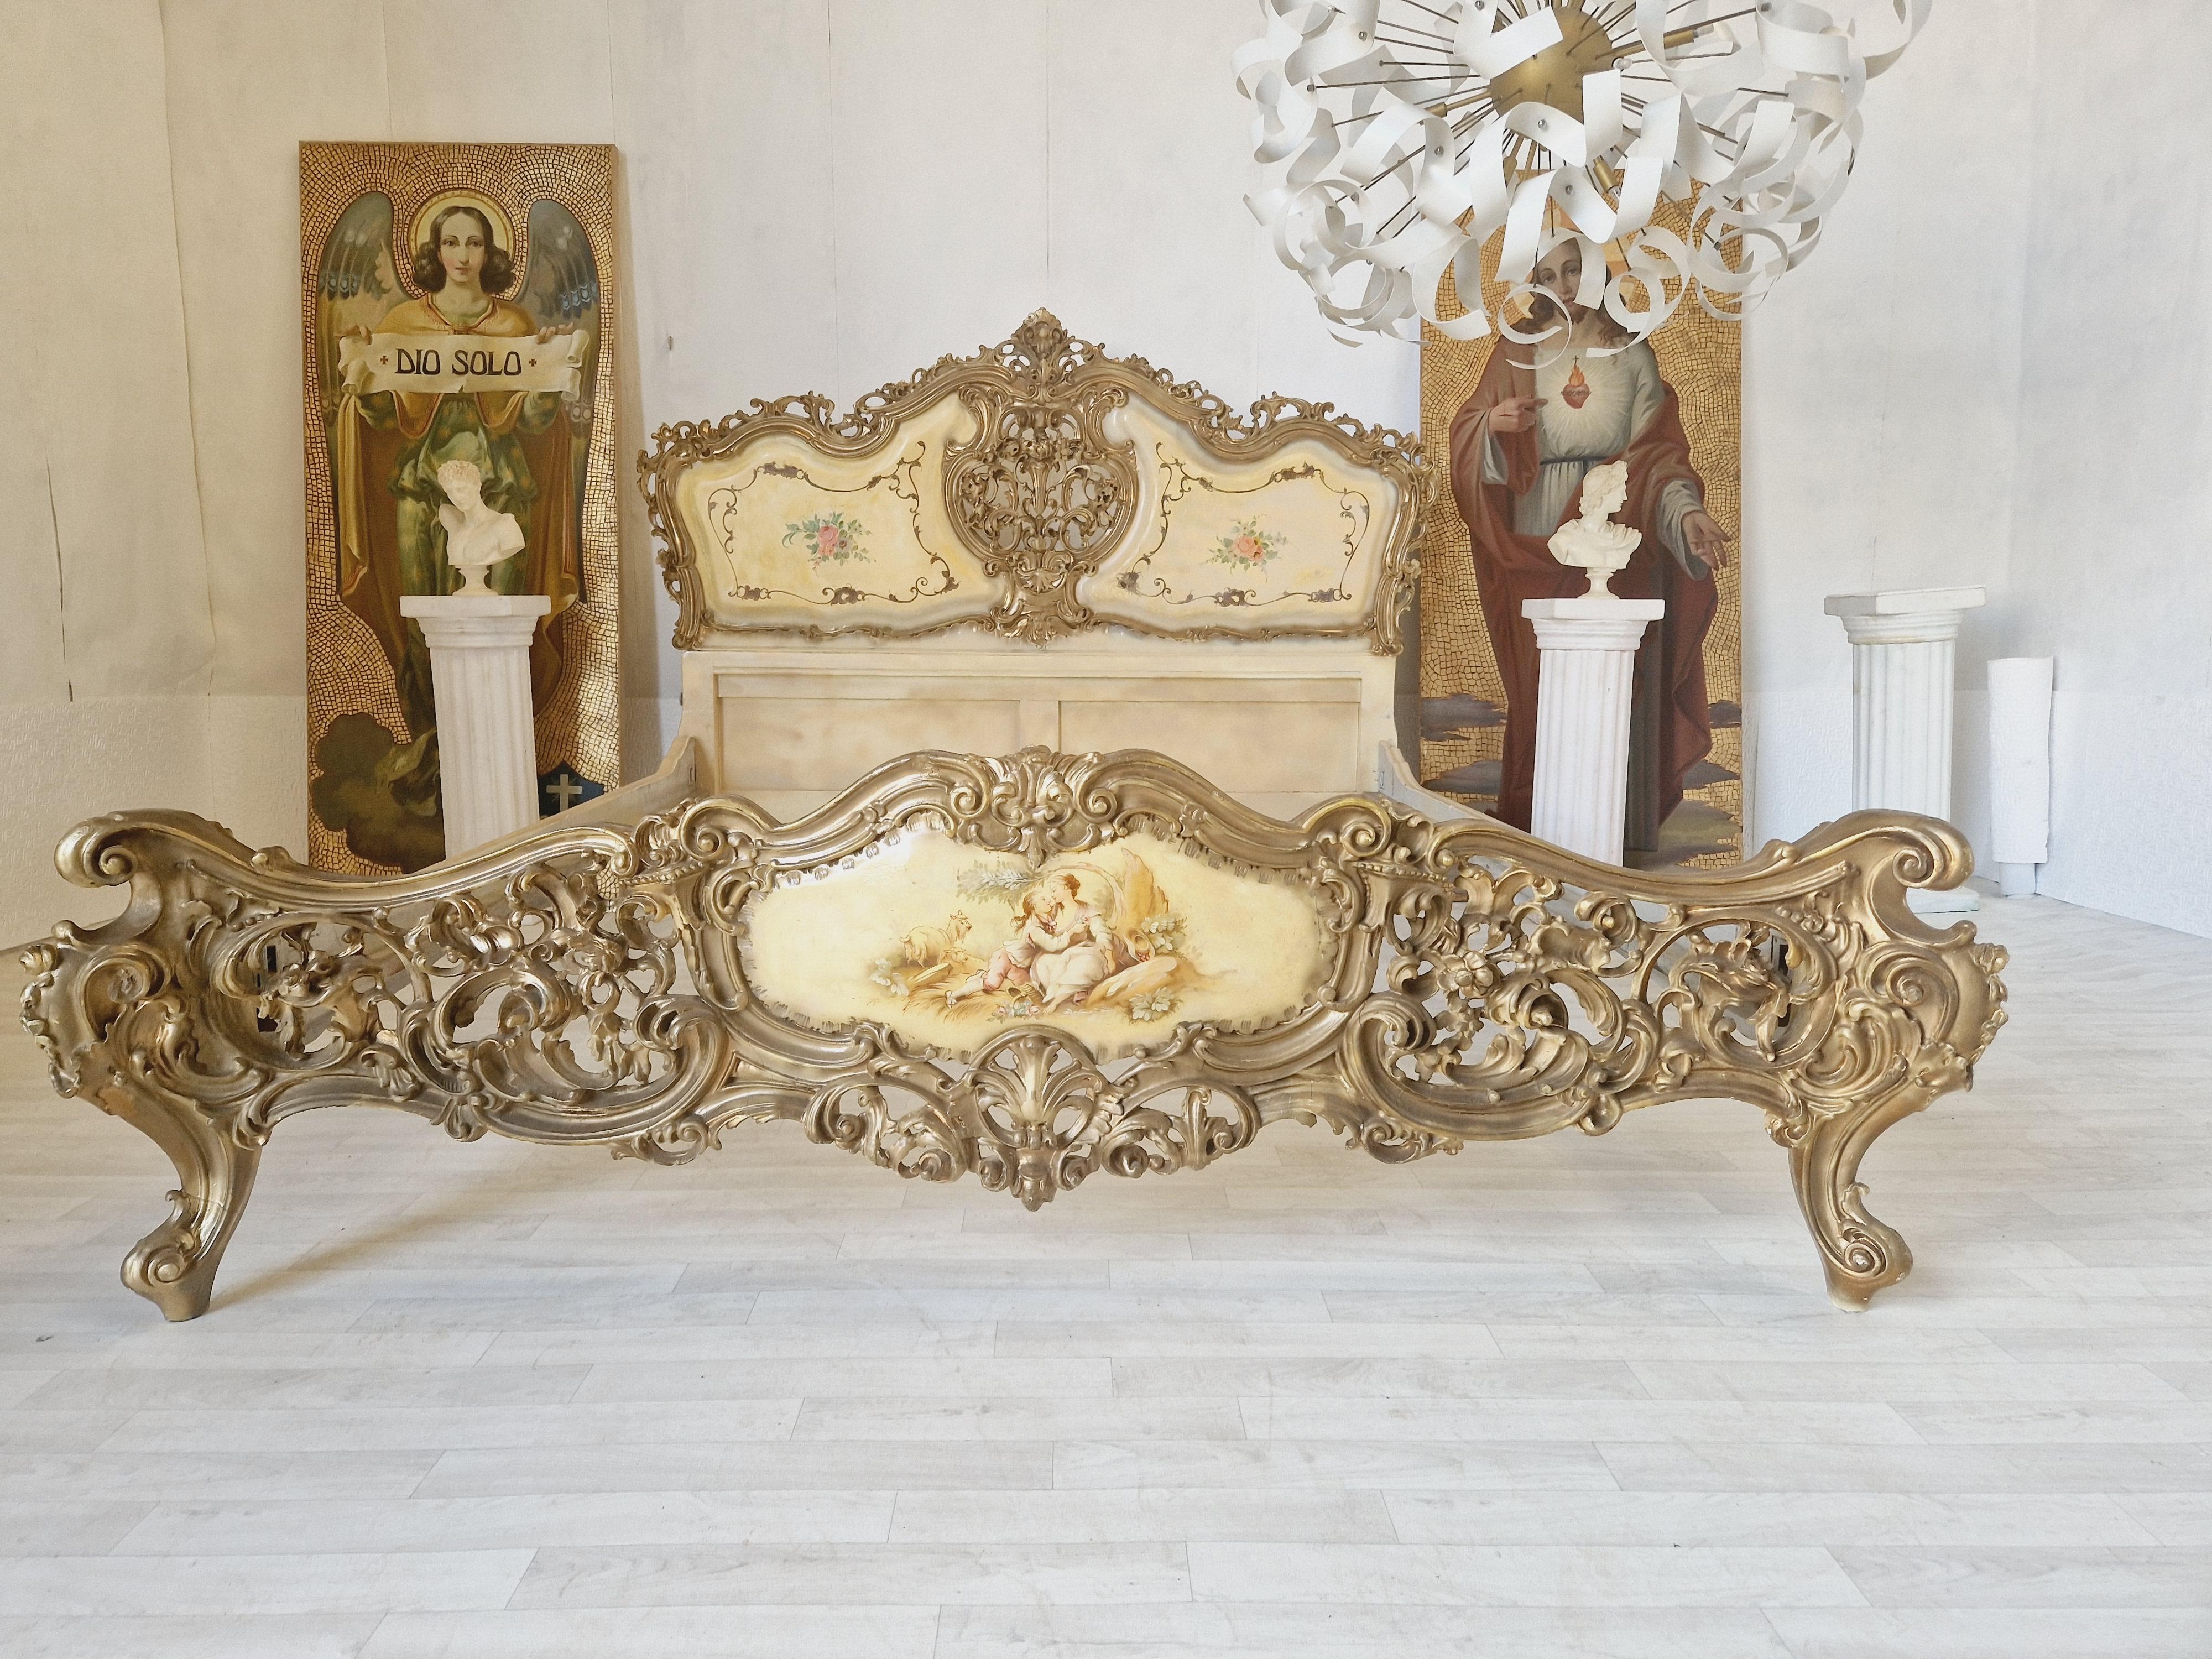 Dieses wunderschöne antike Bett aus Italien ist ein Meisterwerk, das jedes Schlafzimmer mit Eleganz und Raffinesse bereichert. Dieses rechteckige Bett im venezianischen Stil zeichnet sich durch seine exquisiten Schnitzereien und seine beeindruckende